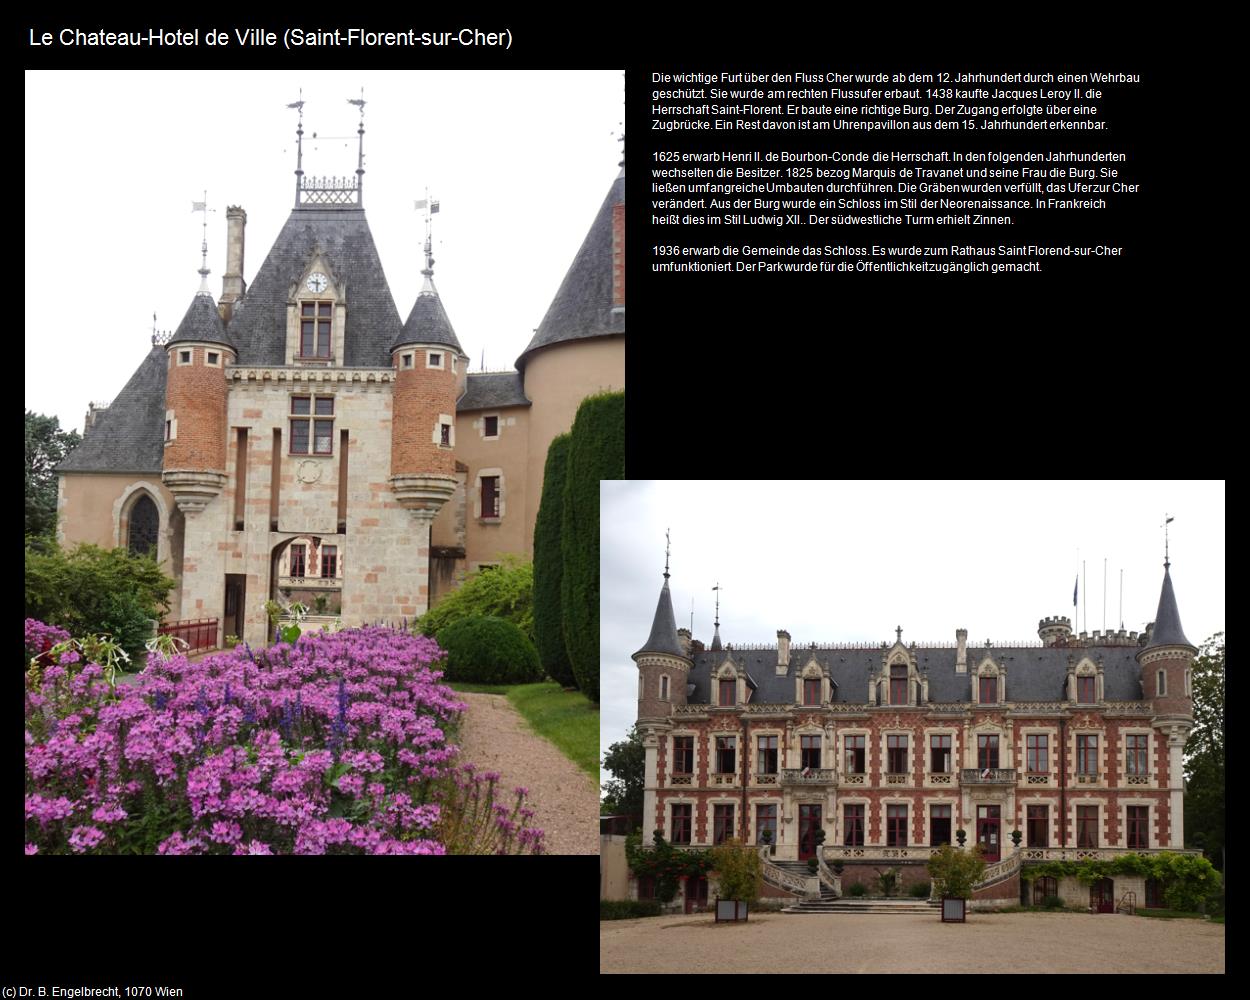 Le Chateau-Hotel de Ville (Saint-Florent-sur-Cher (FR-CVL)) in Kulturatlas-FRANKREICH